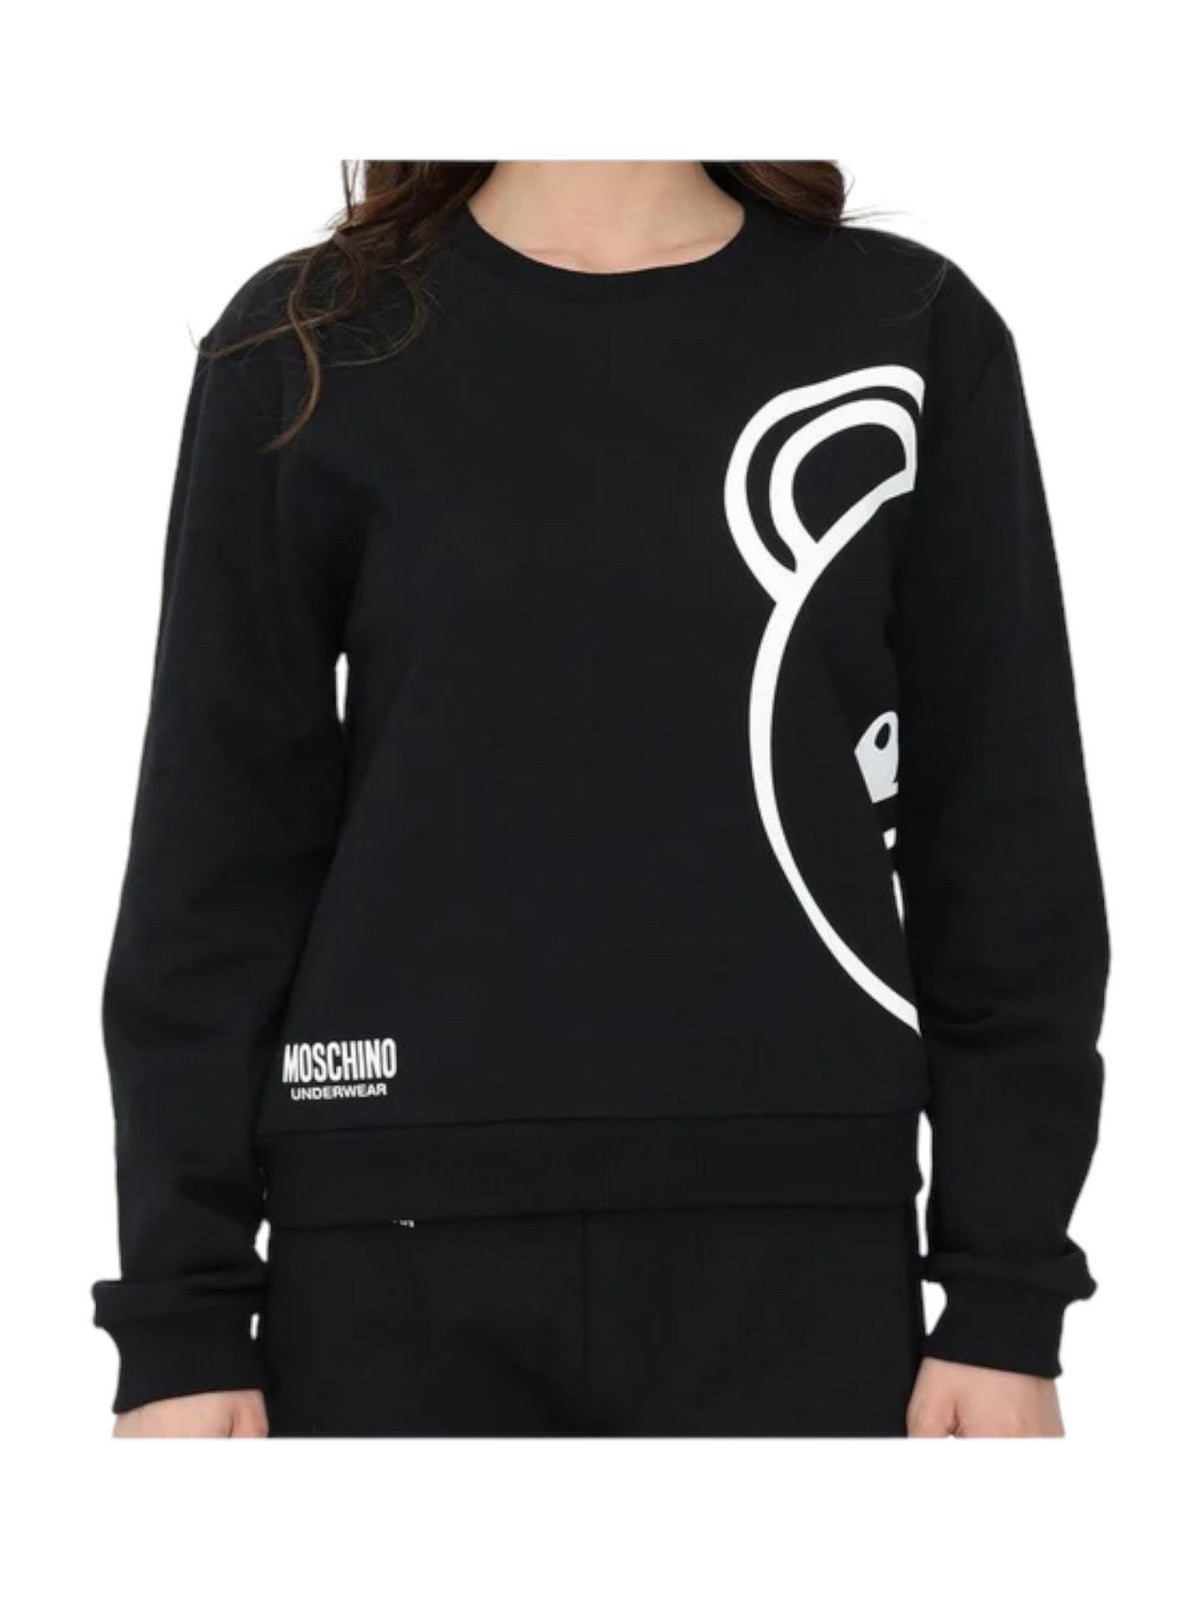 MOSCHINO UNDERWEAR Sweatshirt femme 1724 9021 Noir